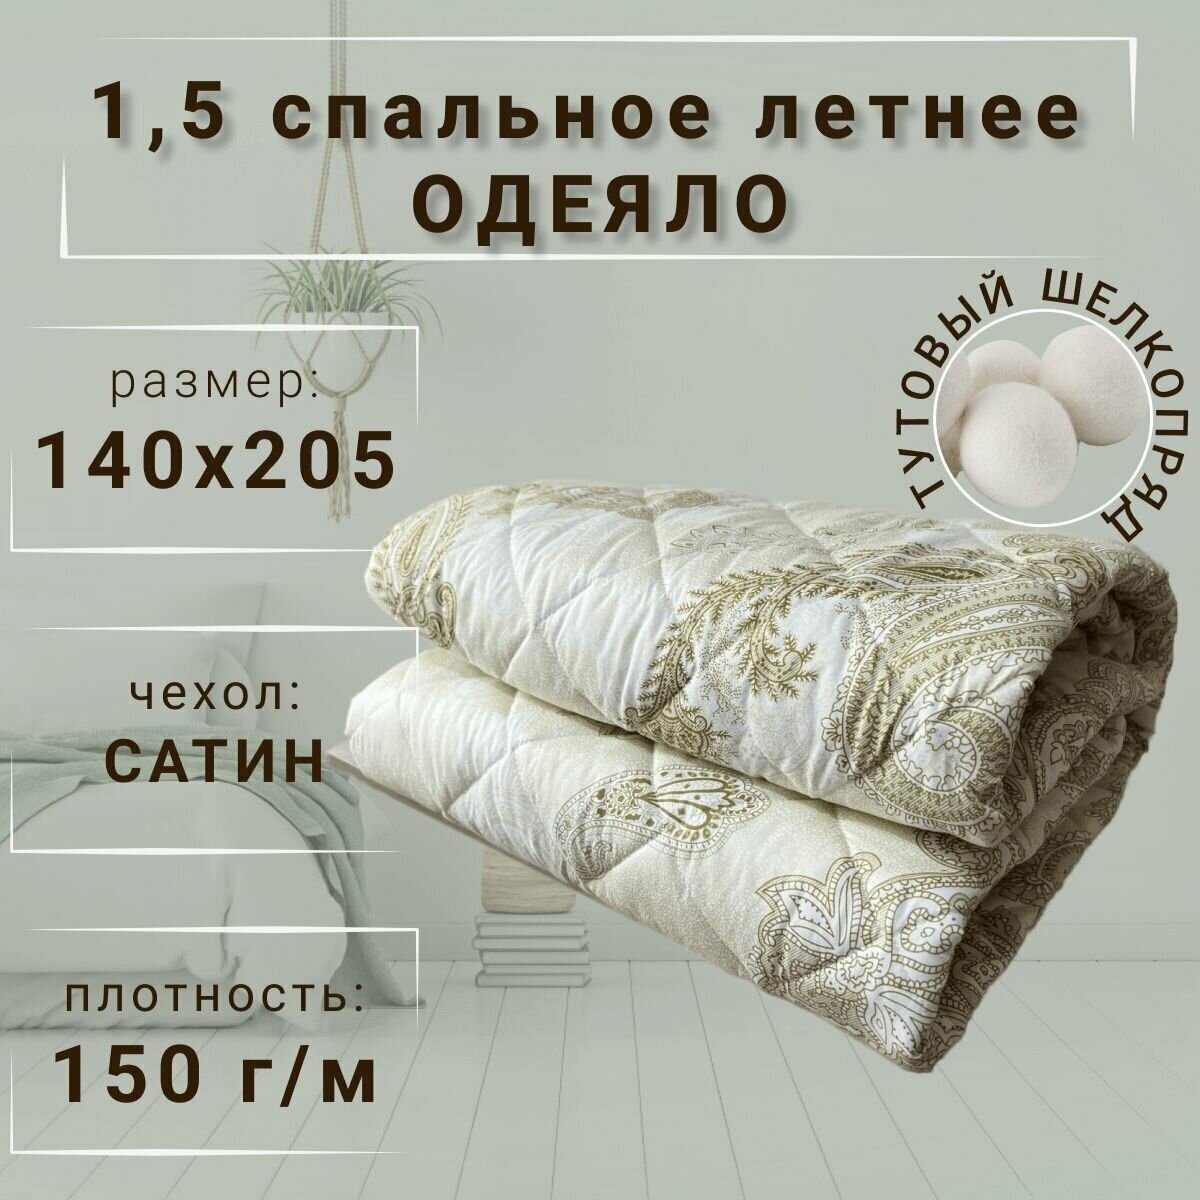 Одеяло Тутовый шелкопряд летнее 15 спальное (140х205) сатин 150 г/м